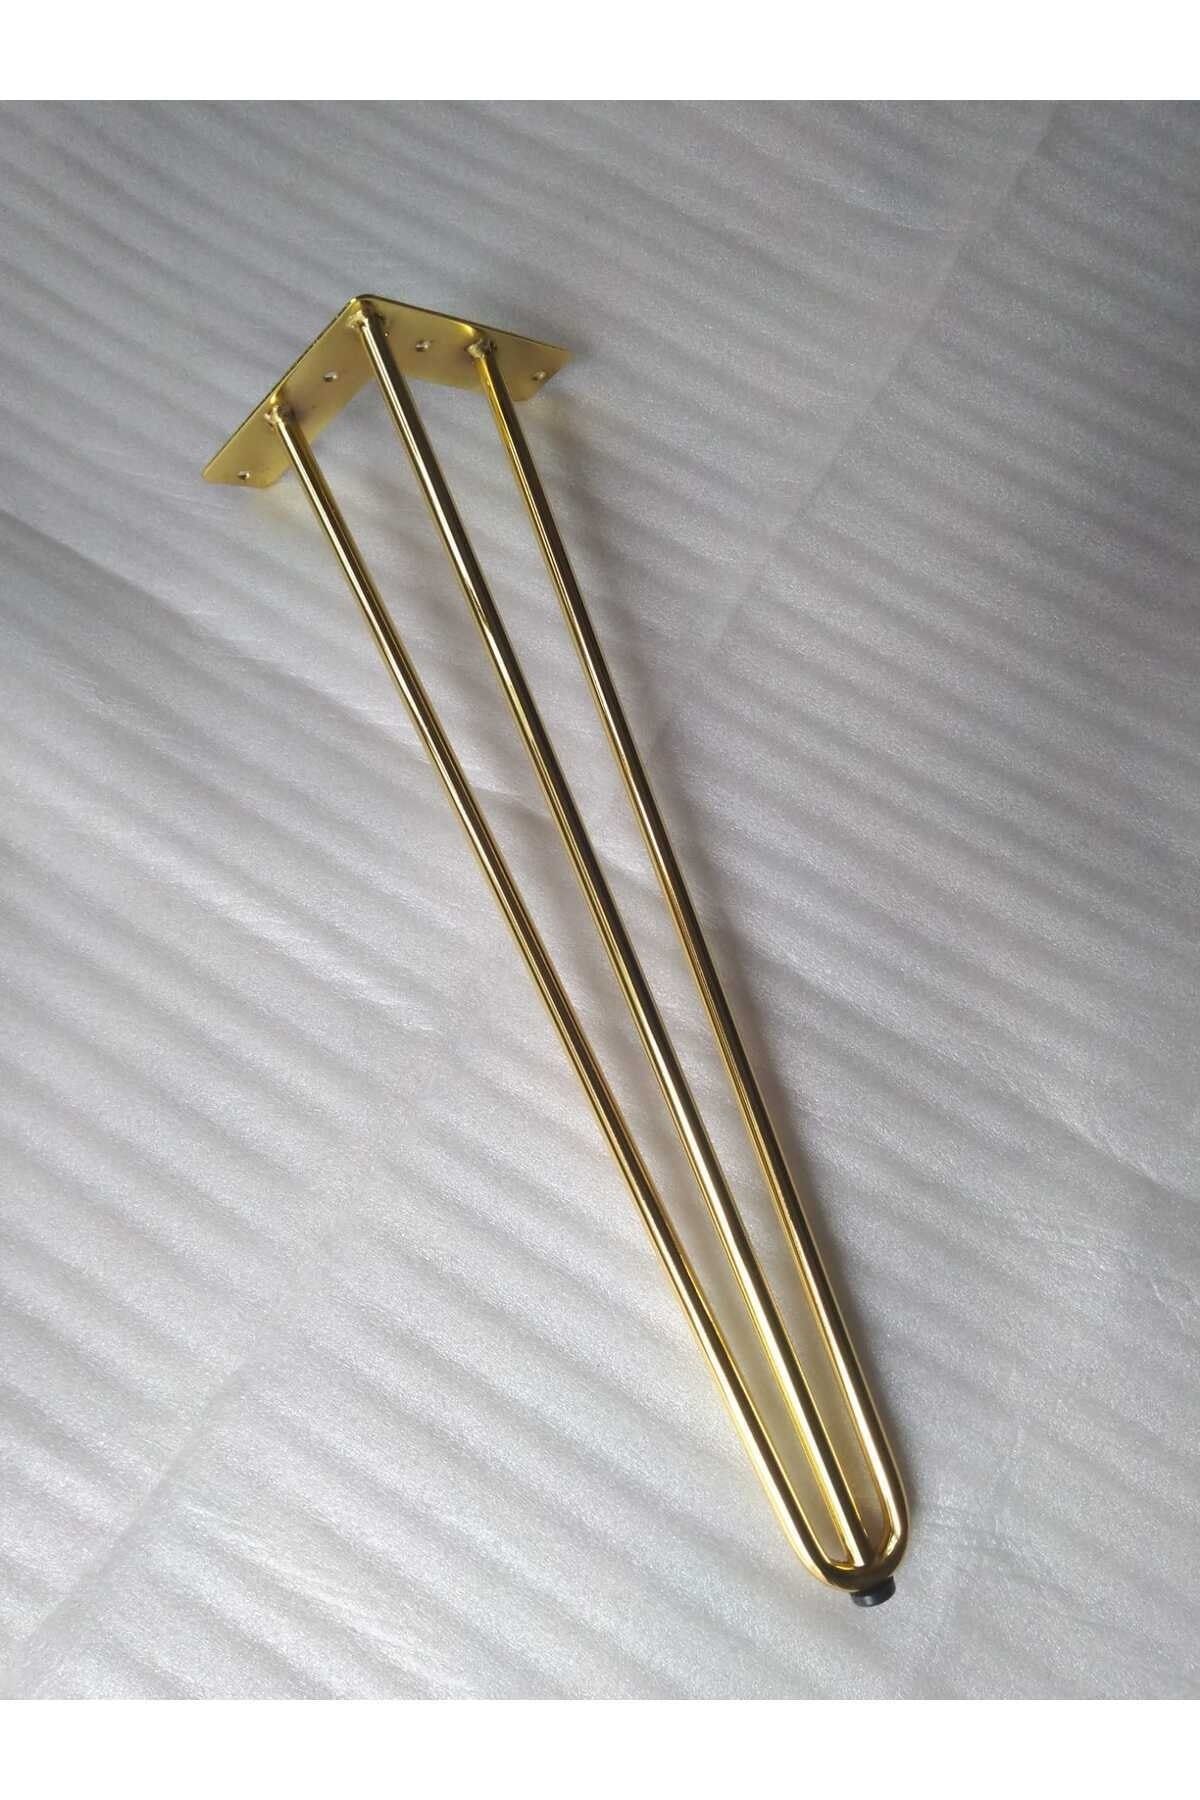 DEMONTEPARK 1 Adet-43.5cm Metal Firkete Ayak, Gold Renk Kaplama,masa Ayağı